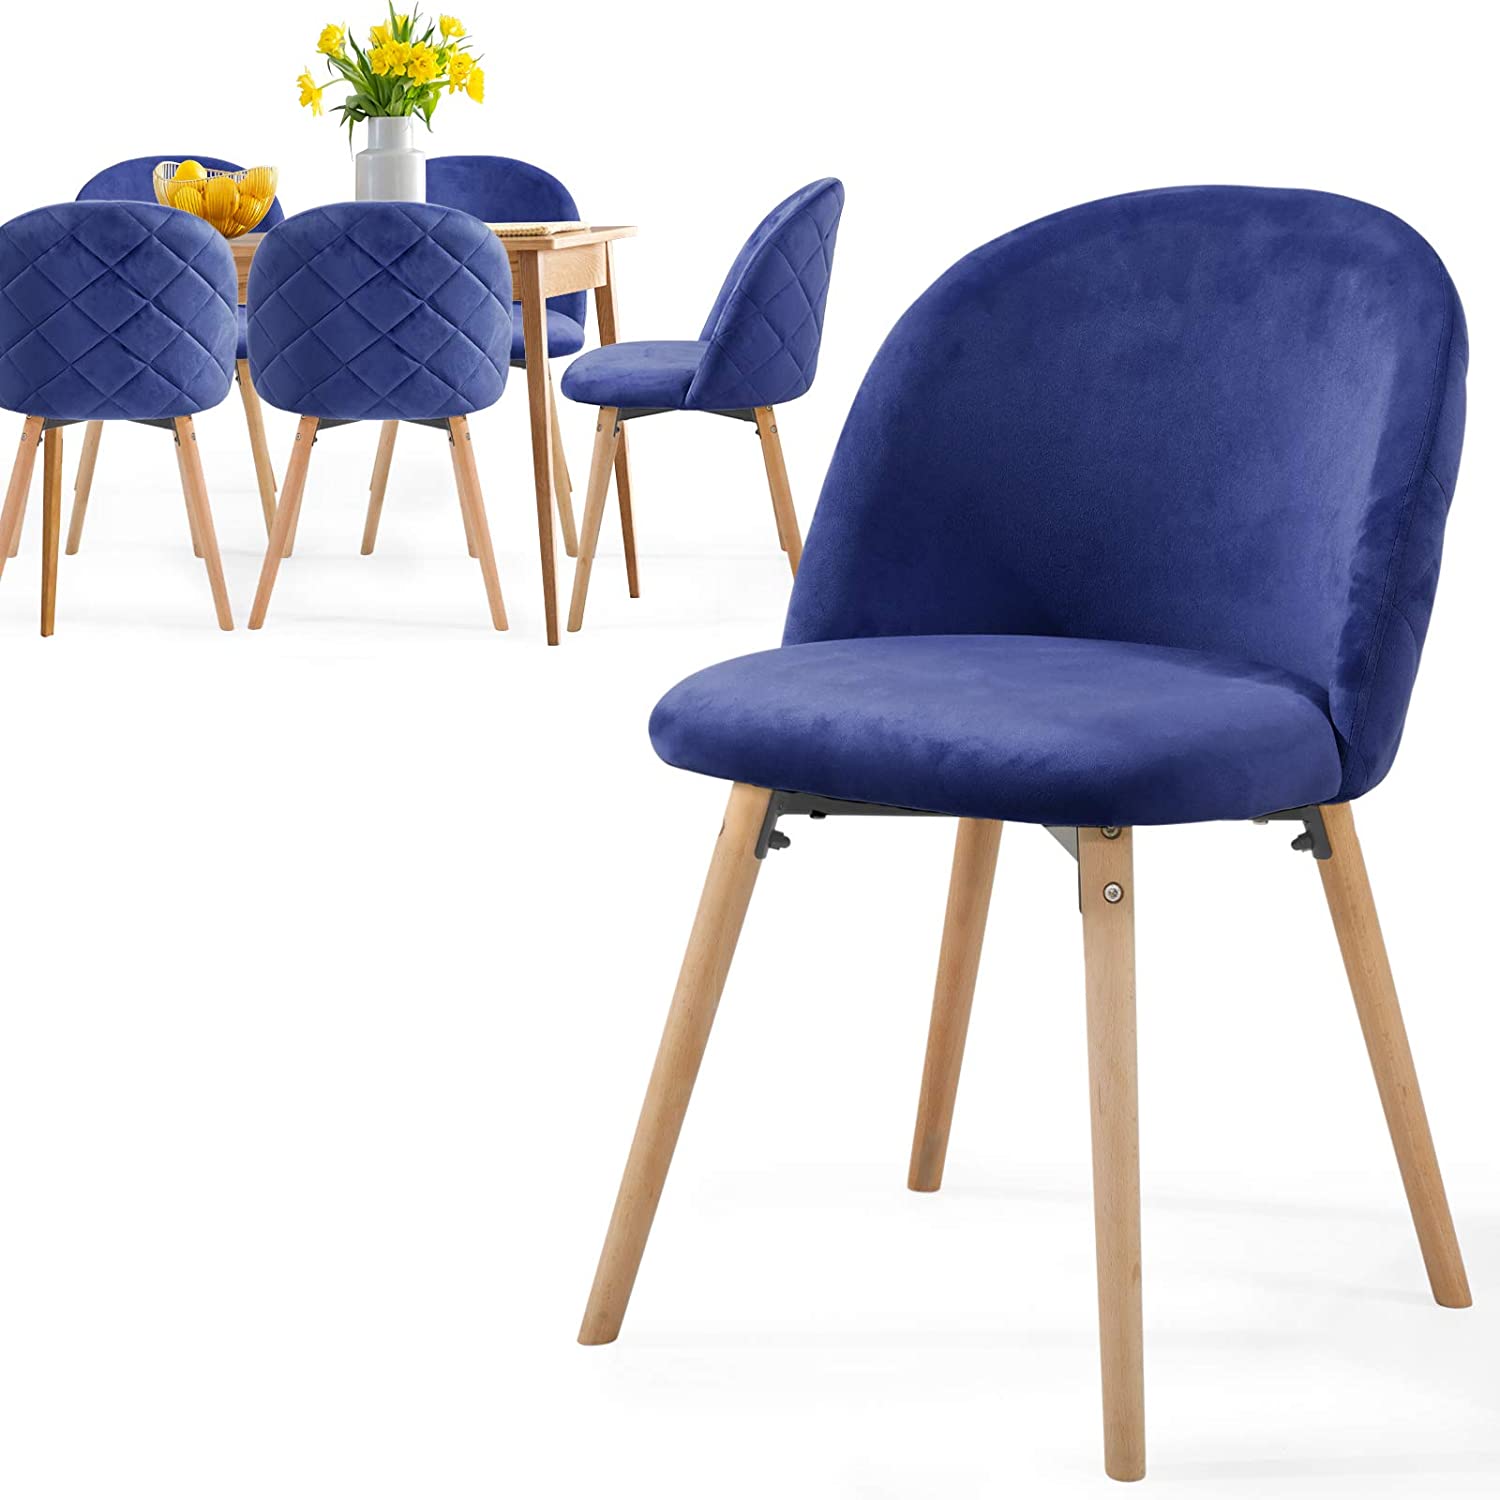 Eetkamerstoelen – Lounge stoelen – Scandinavisch – Retro – Vintage – Gestoffeerd – Set van 6 – Blauw